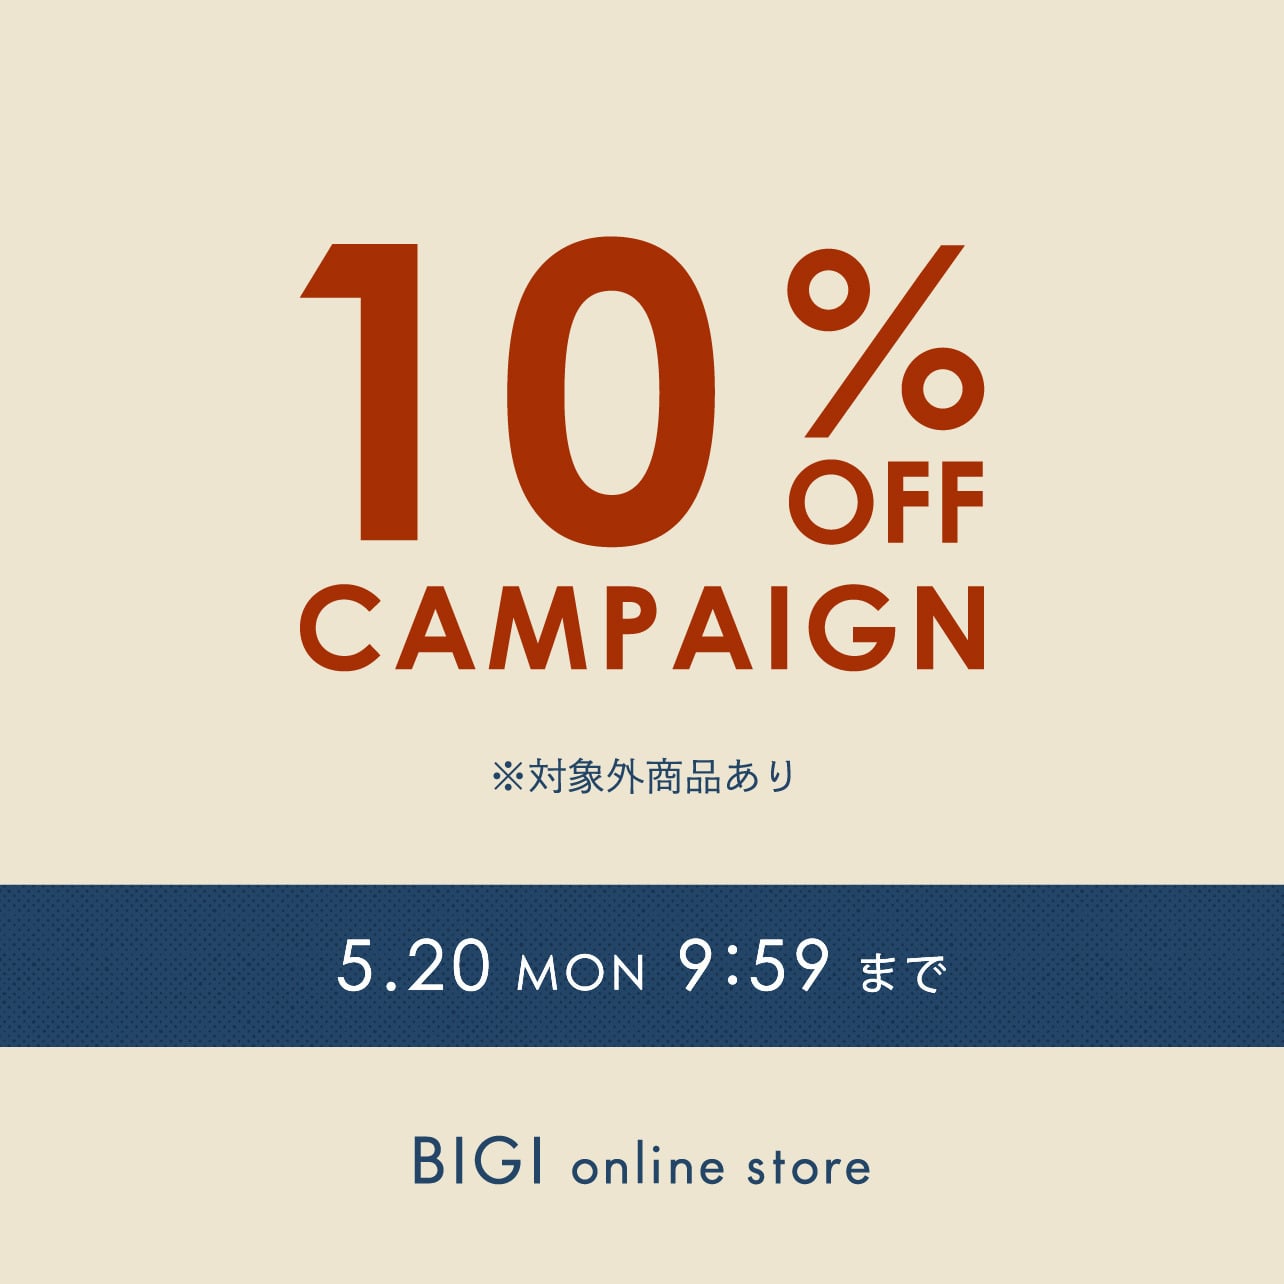 【期間限定】10%OFFキャンペーン